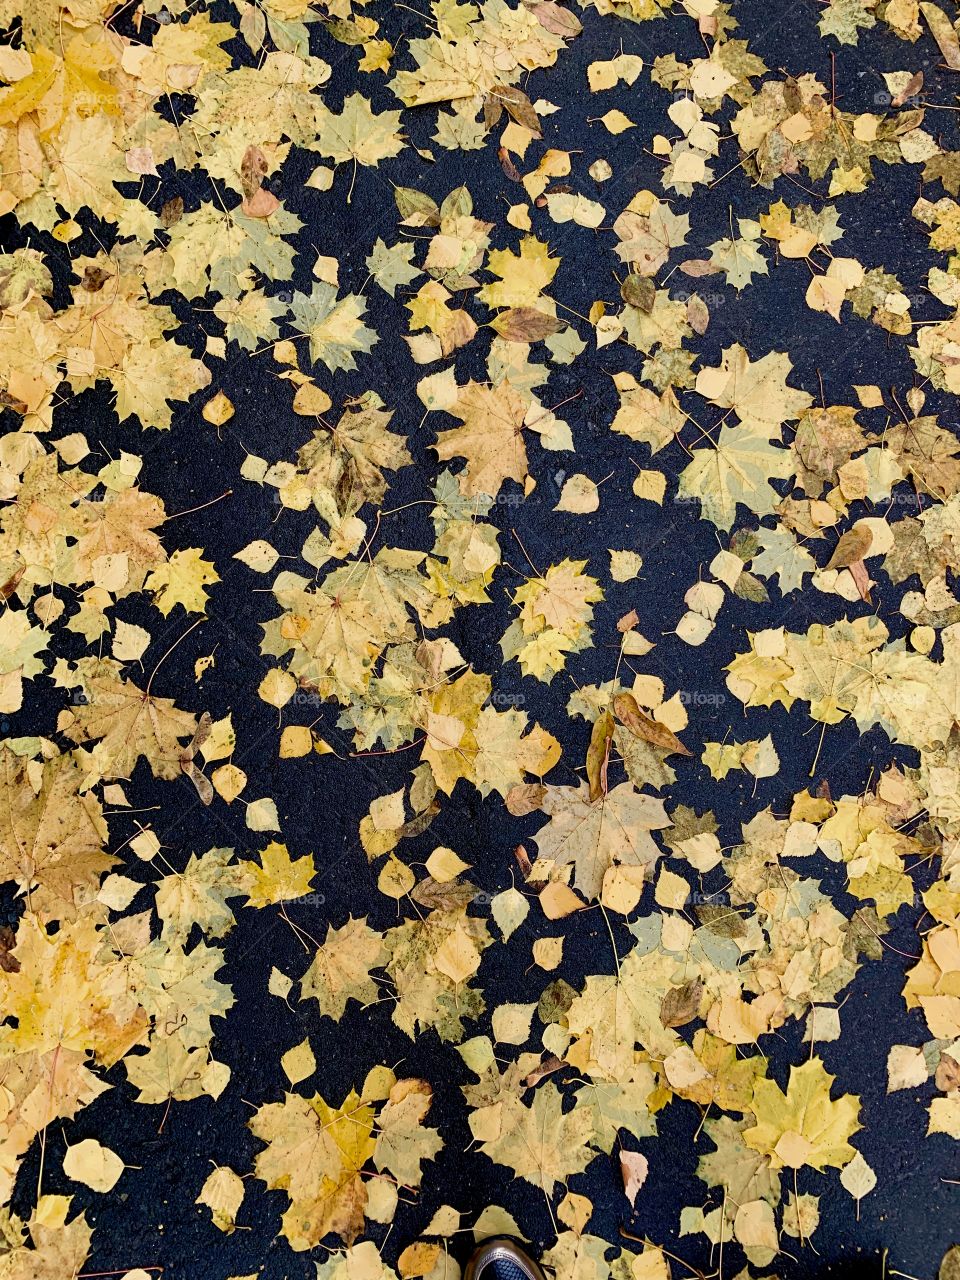 Autumn road. Golden fallen leaves on black wet asphalt